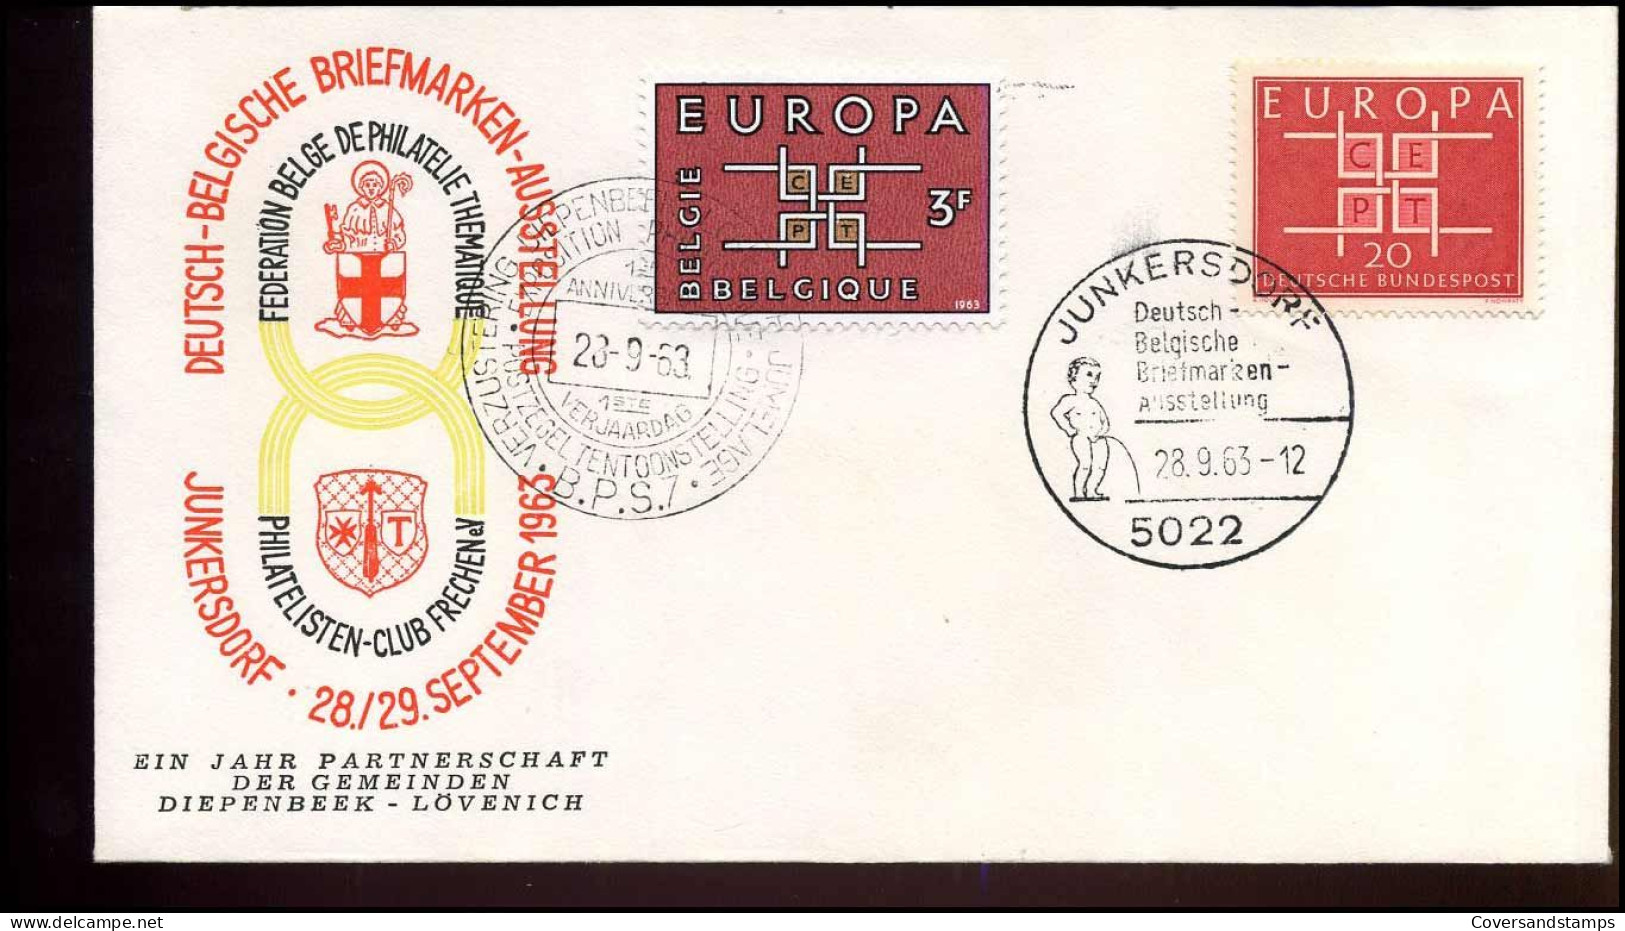 FDC - Belgium & Bundespost - Deutsch-Belgische Briefmarken-Ausstellung - 1963